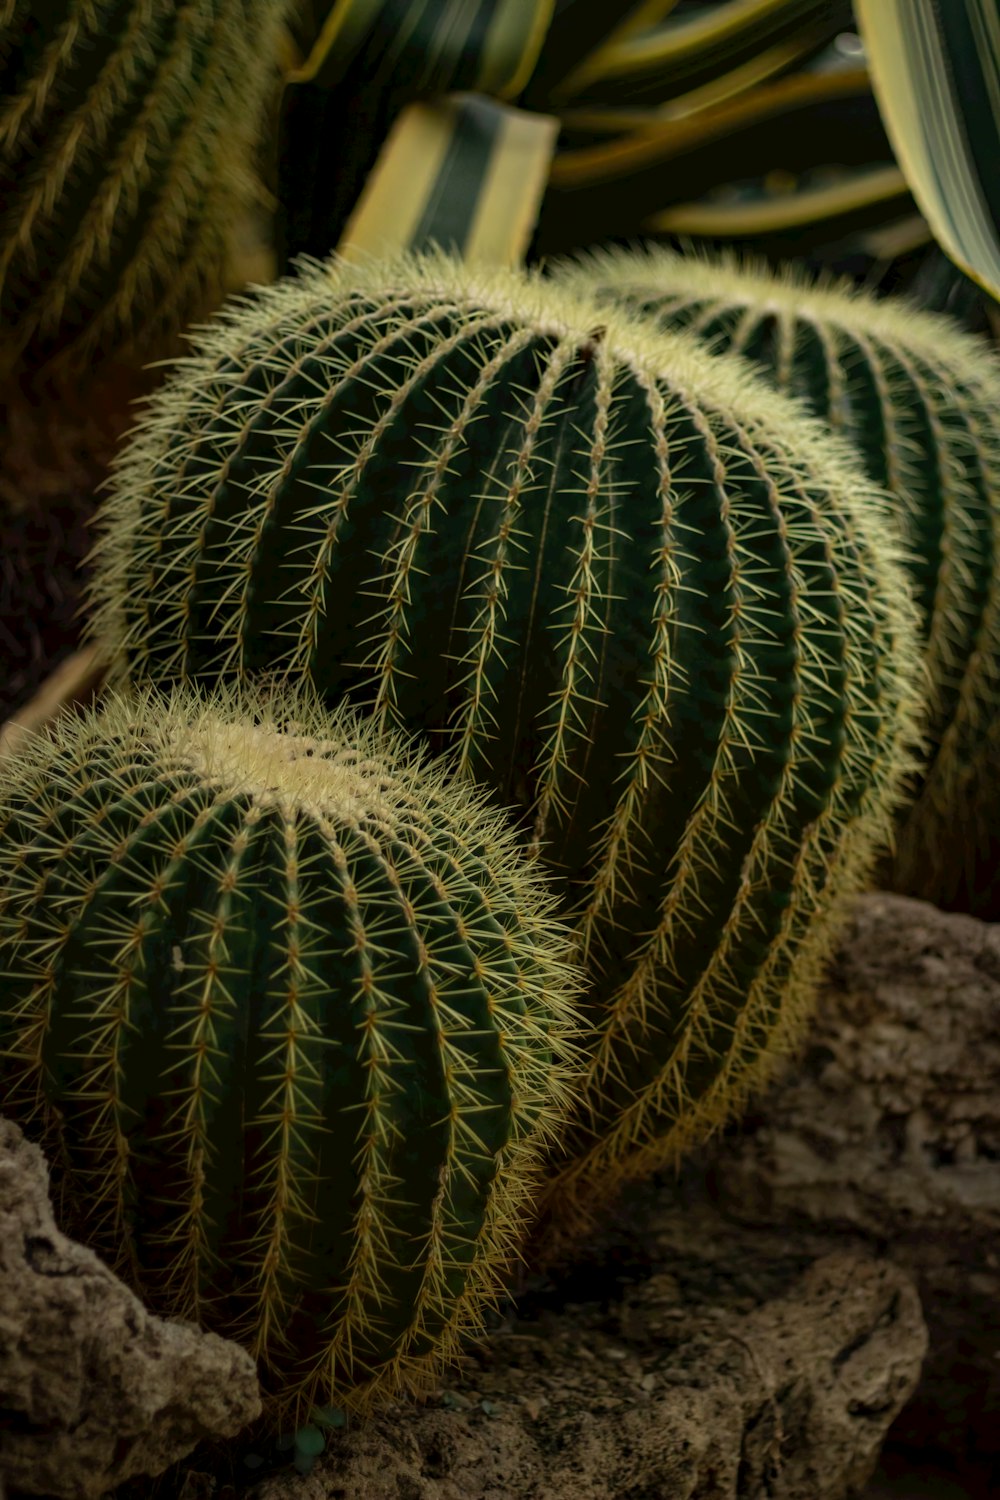 a close up of a cactus plant near rocks